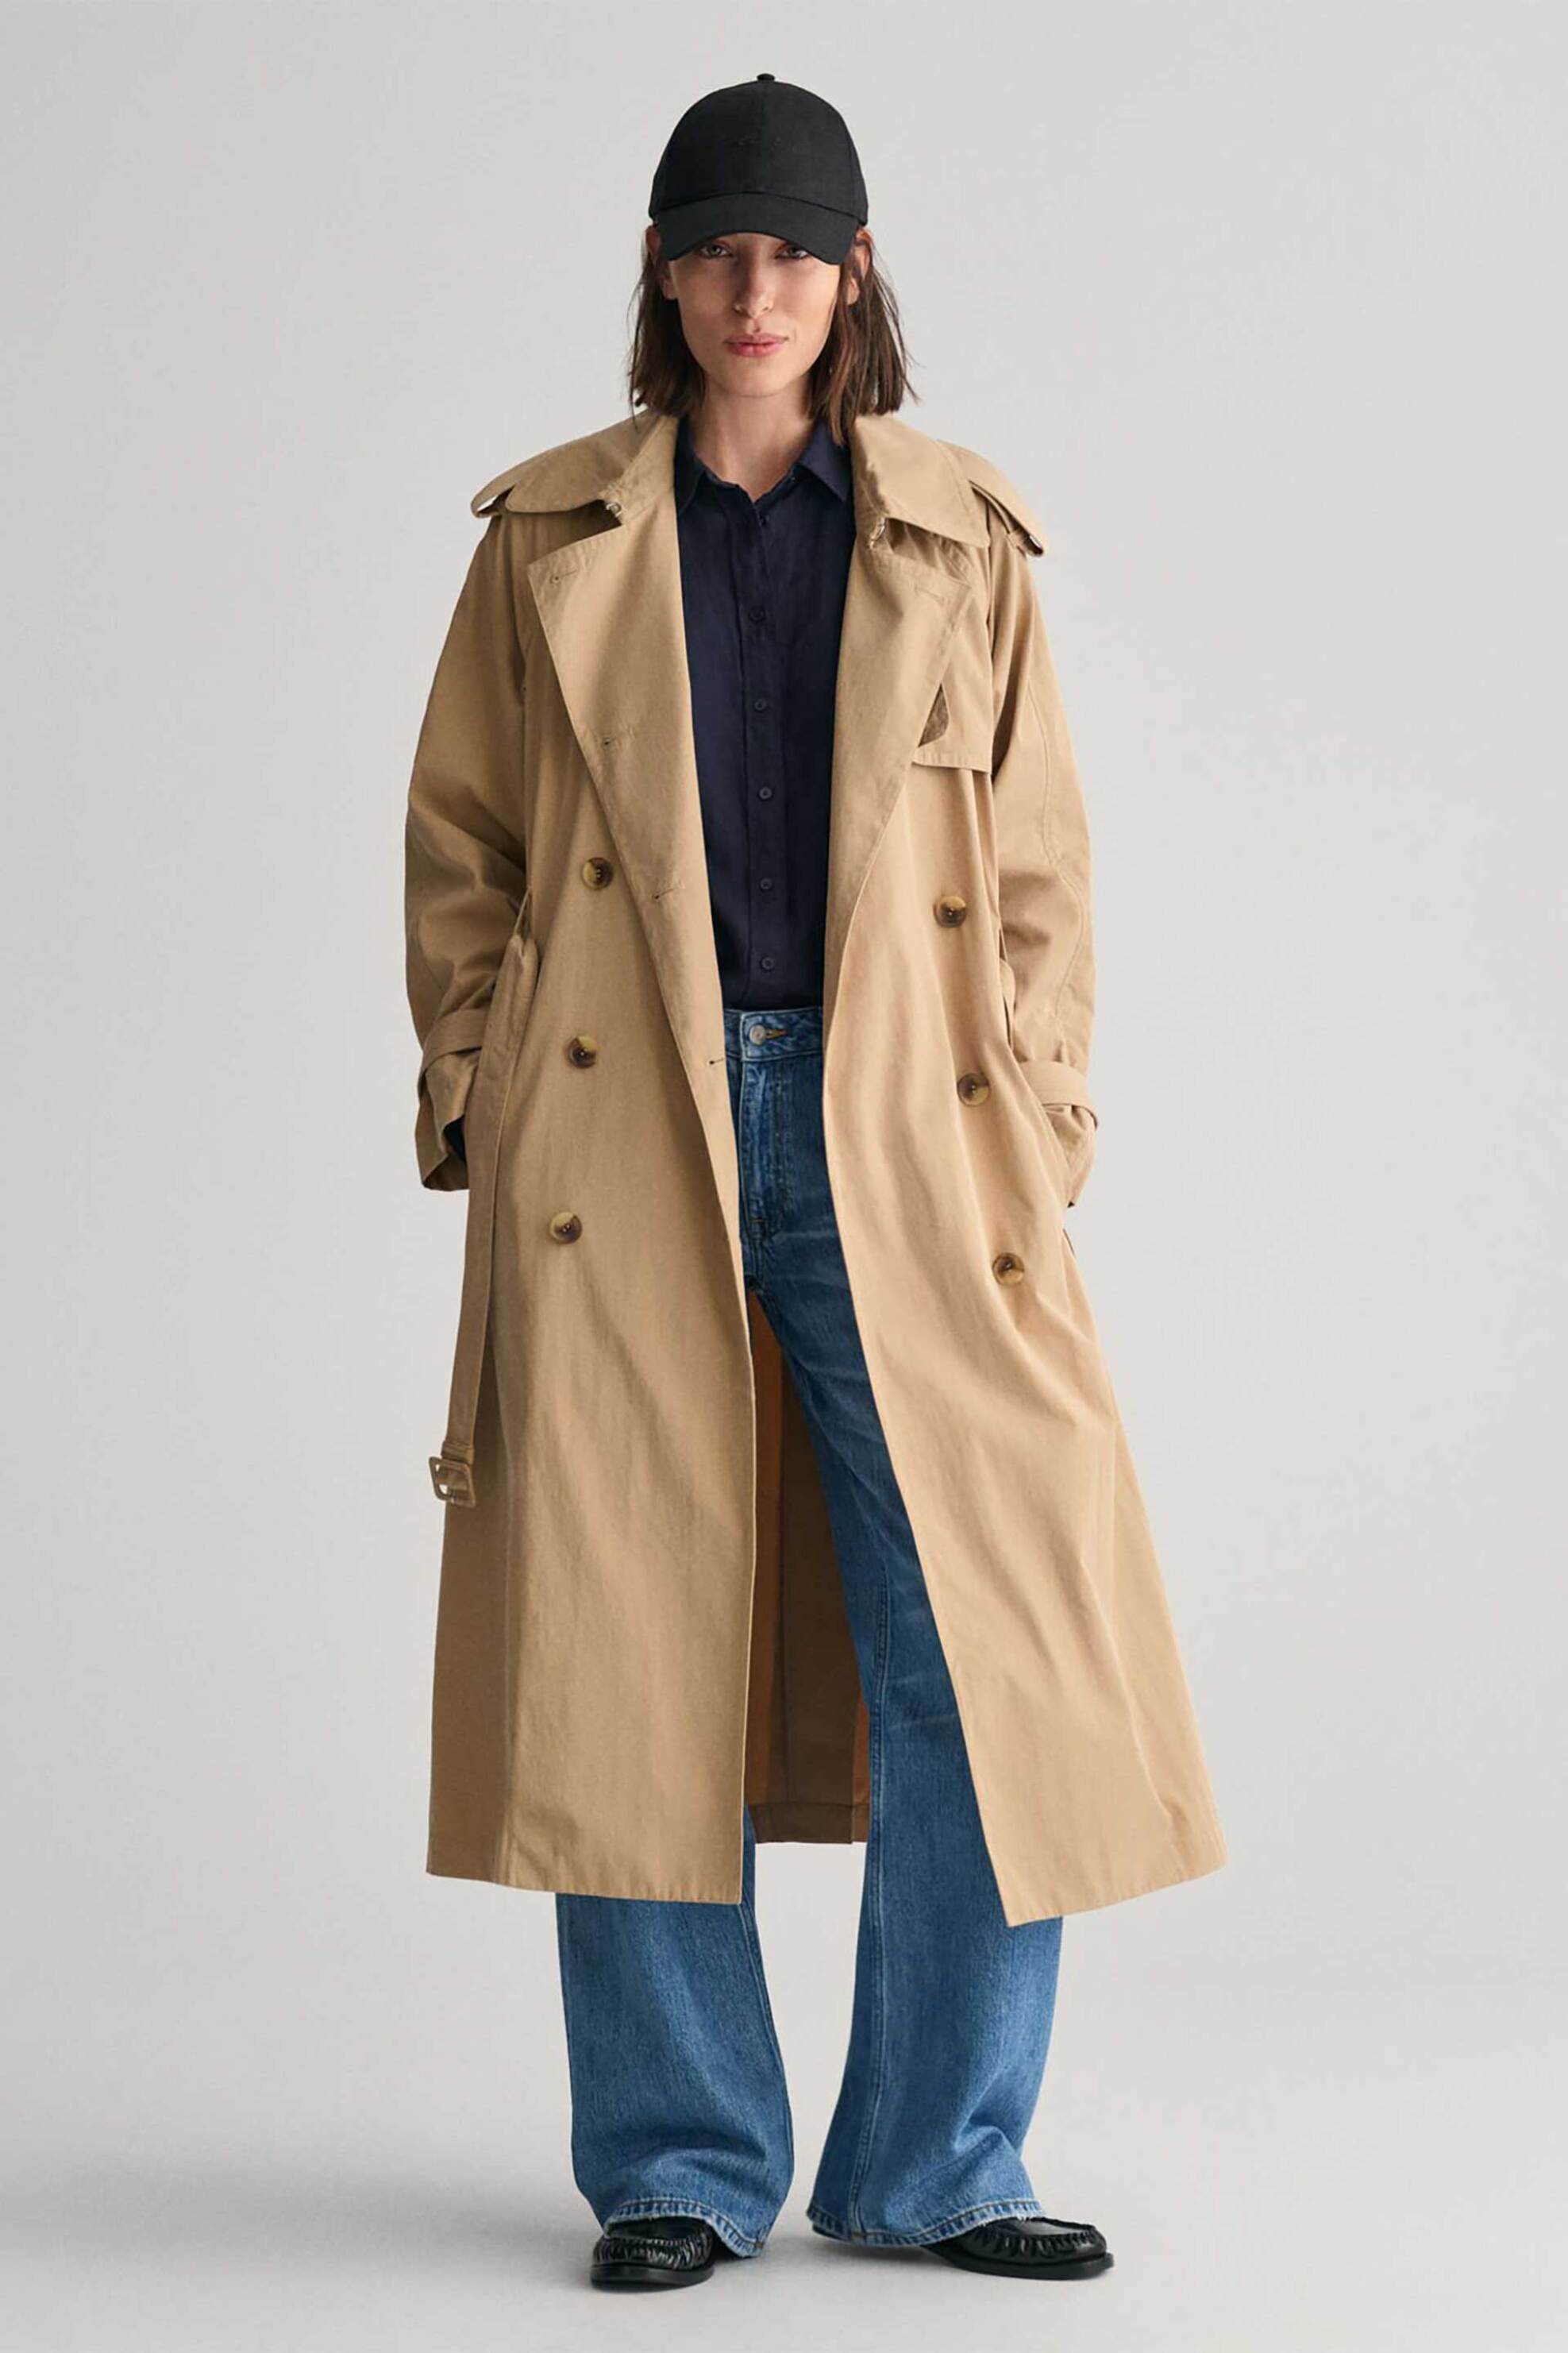 Γυναικεία Ρούχα & Αξεσουάρ > Γυναικεία Ρούχα > Γυναικεία Πανωφόρια > Γυναικεία Παλτό Gant γυναικείο παλτό αδιάβροχο Relaxed Fit - 4751119 Μπεζ